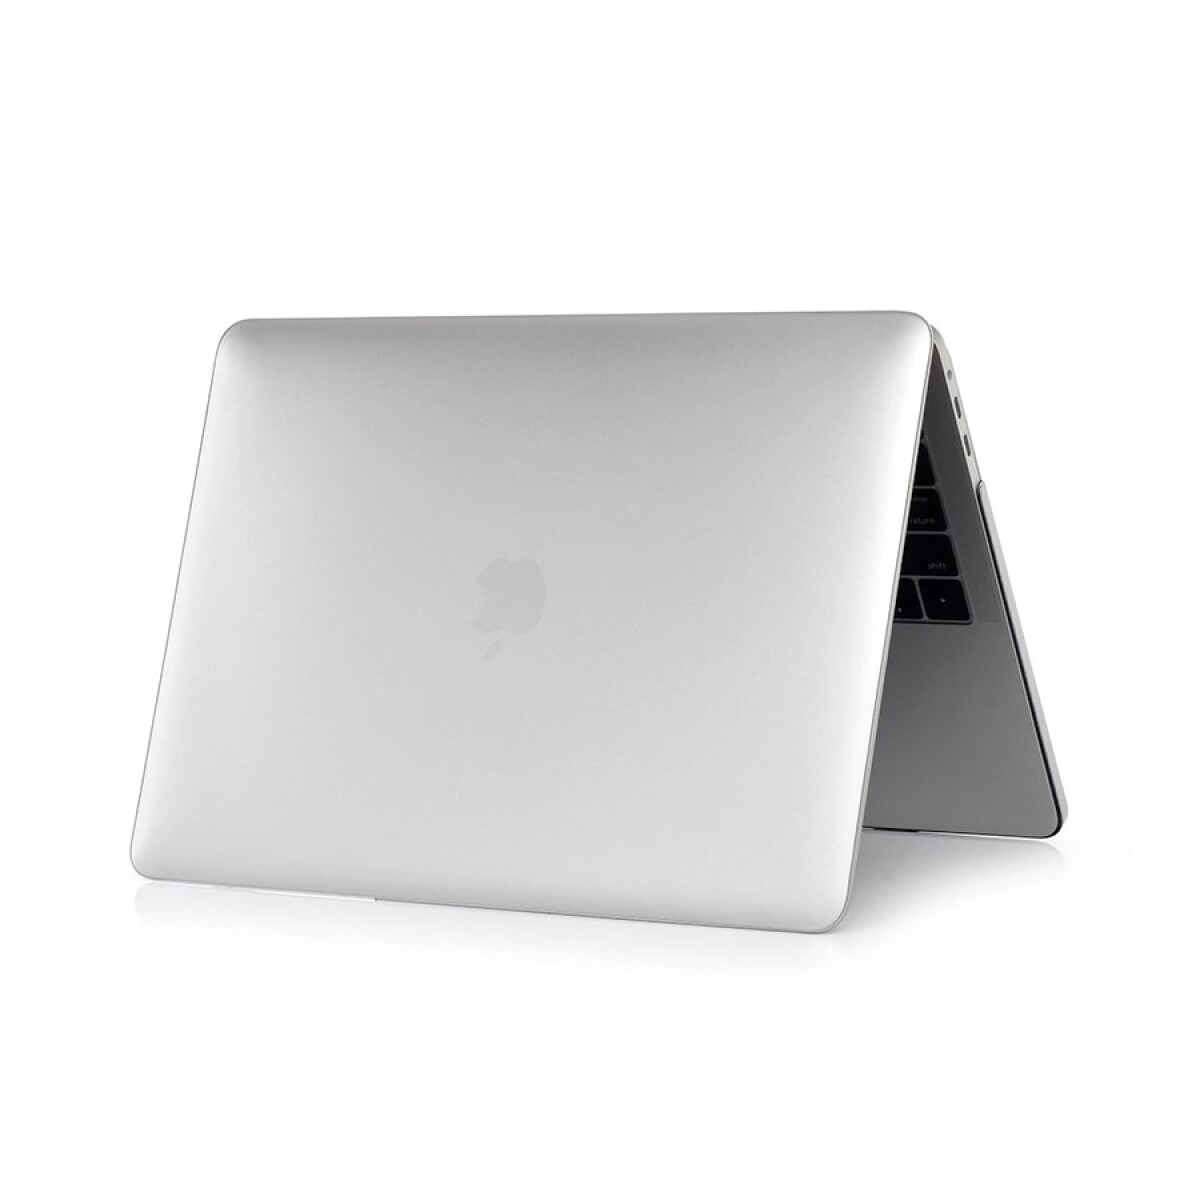 Carcasa case hardshell para macbook pro 16.2' devia Transparente